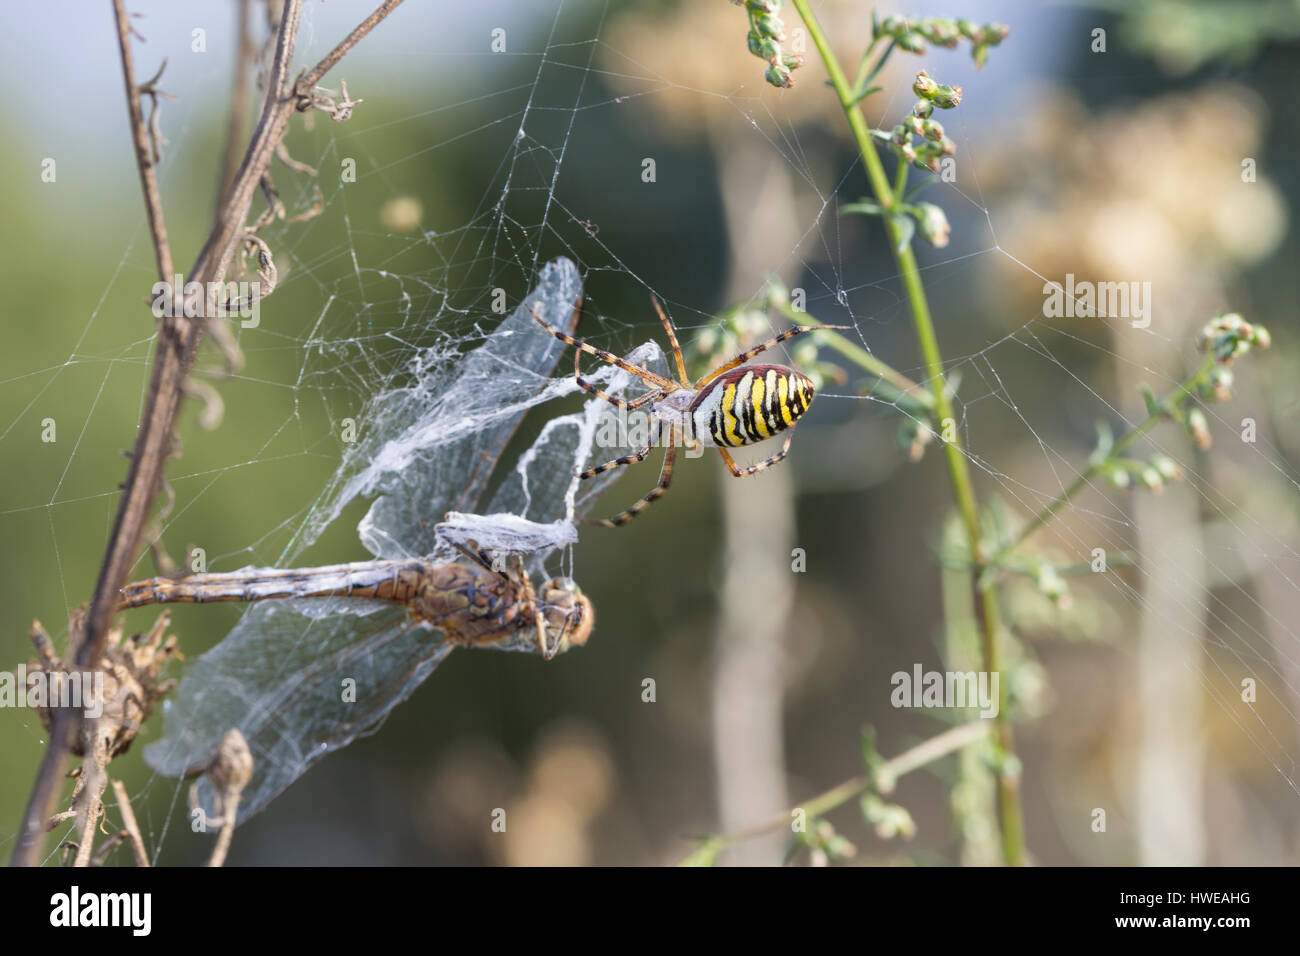 Wespenspinne, Zebraspinne, Argiope bruennichi, Spinne in ihrem Netz mit einer Libelle als Beute, black-and-yellow argiope, black-and-yellow garden spi Stock Photo